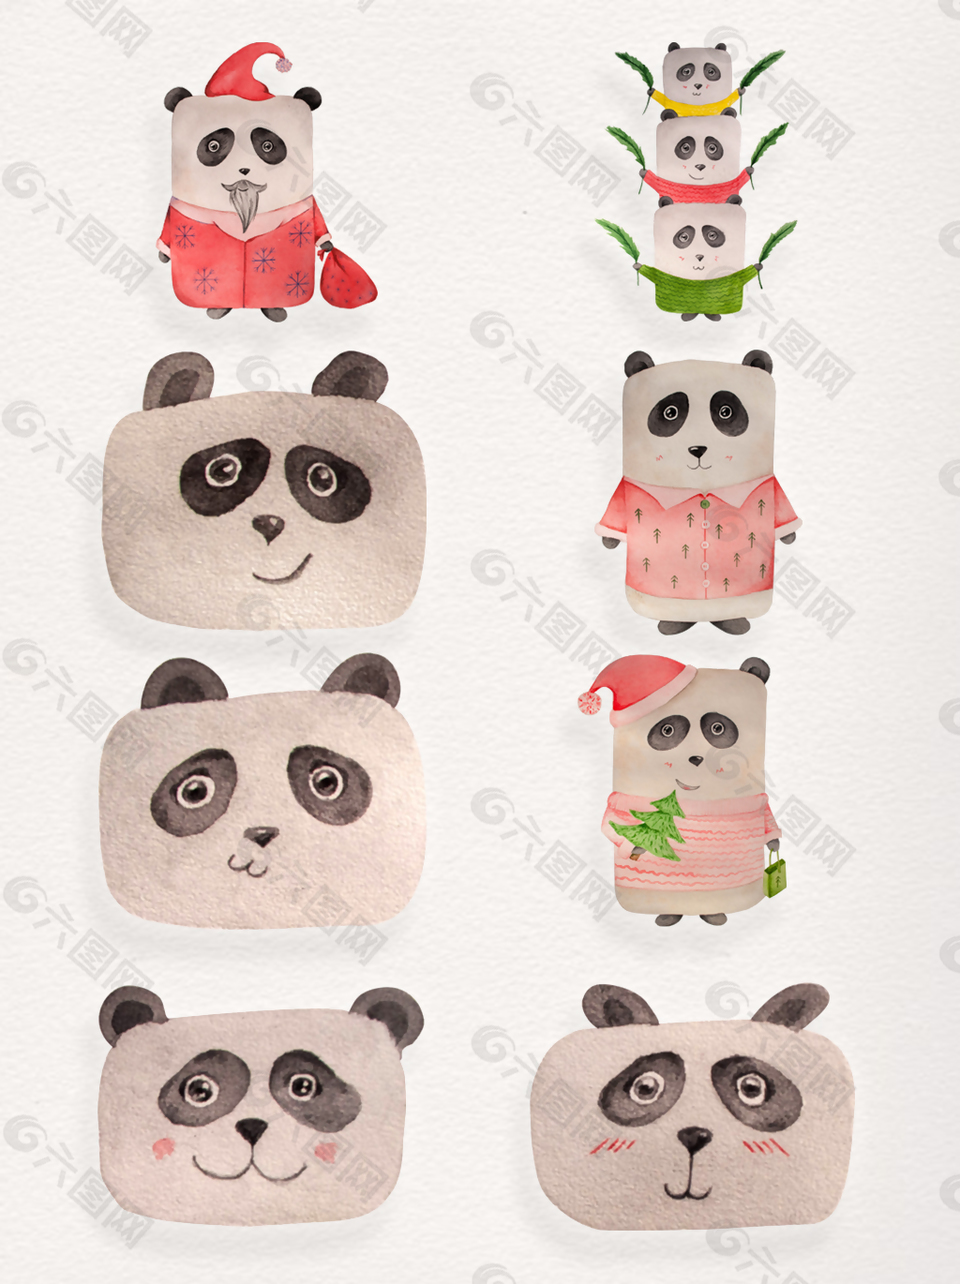 可爱搞怪熊猫透明装饰素材合集